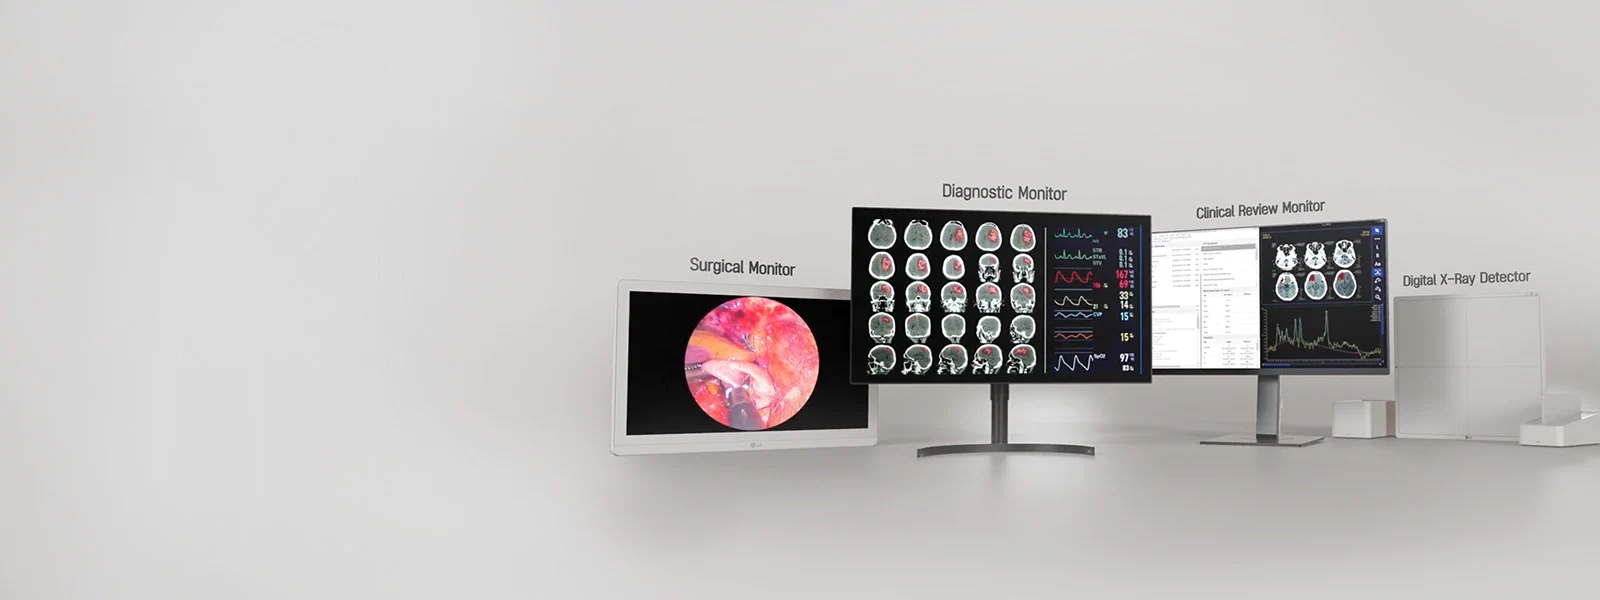 LG desarrolla software detector de rayos X digital con inteligencia artificial